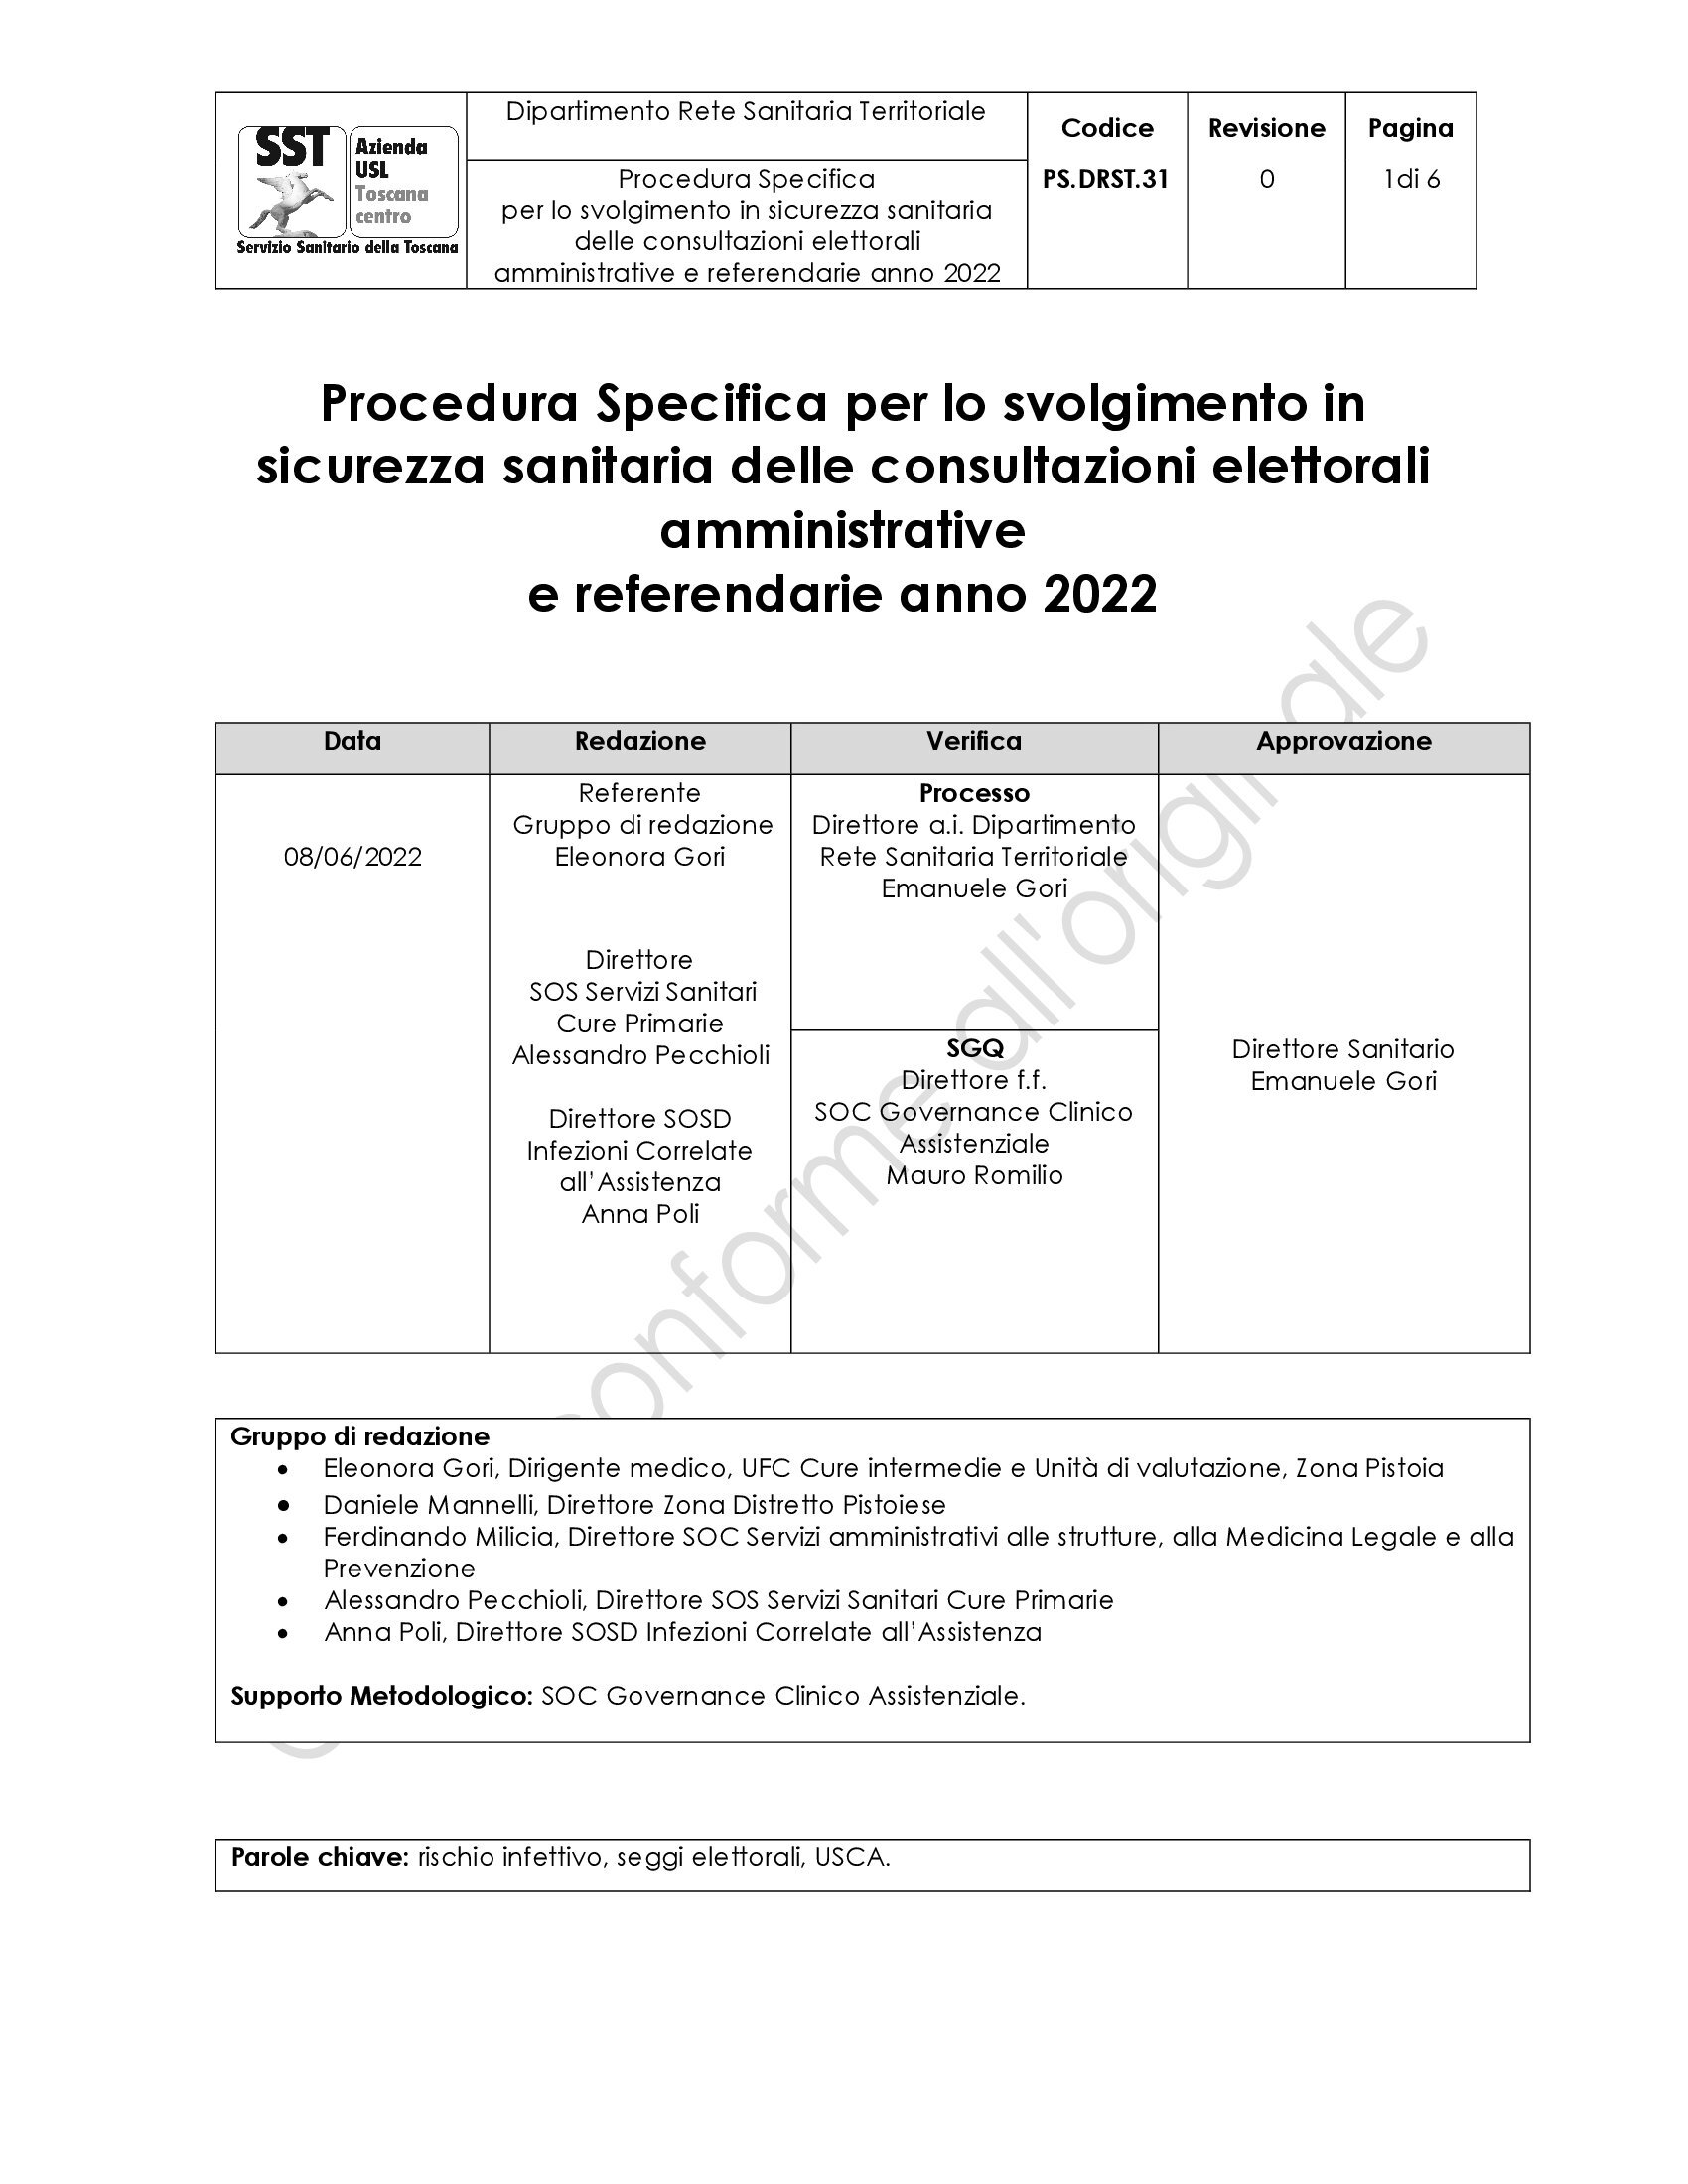 PS.DRST.31 Procedura Specifica per lo svolgimento in sicurezza sanitaria delle consultazioni elettorali amministrative e referendarie anno 2022